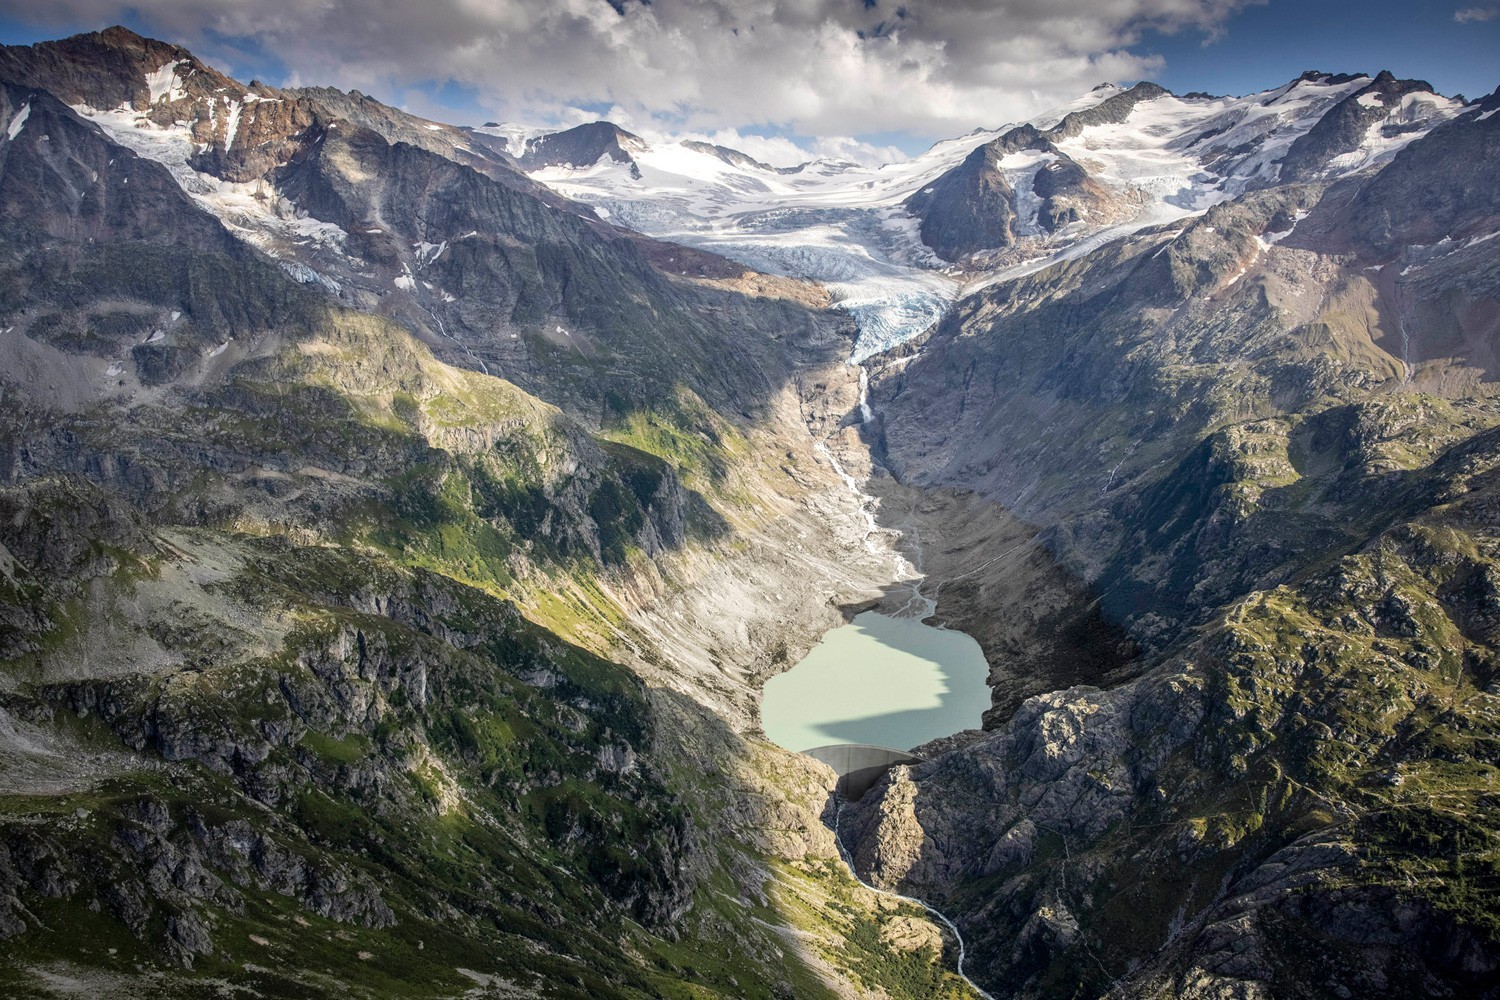 Kraftwerke Oberhasli AG (KWO) prévoit la construction d'un nouveau lac d'accumulation et d'une centrale hydroélectrique dans la région du Trift dans le Gadmental, car un lac s'est formé à cet endroit dans le lit du glacier suite au retrait de ce dernier a